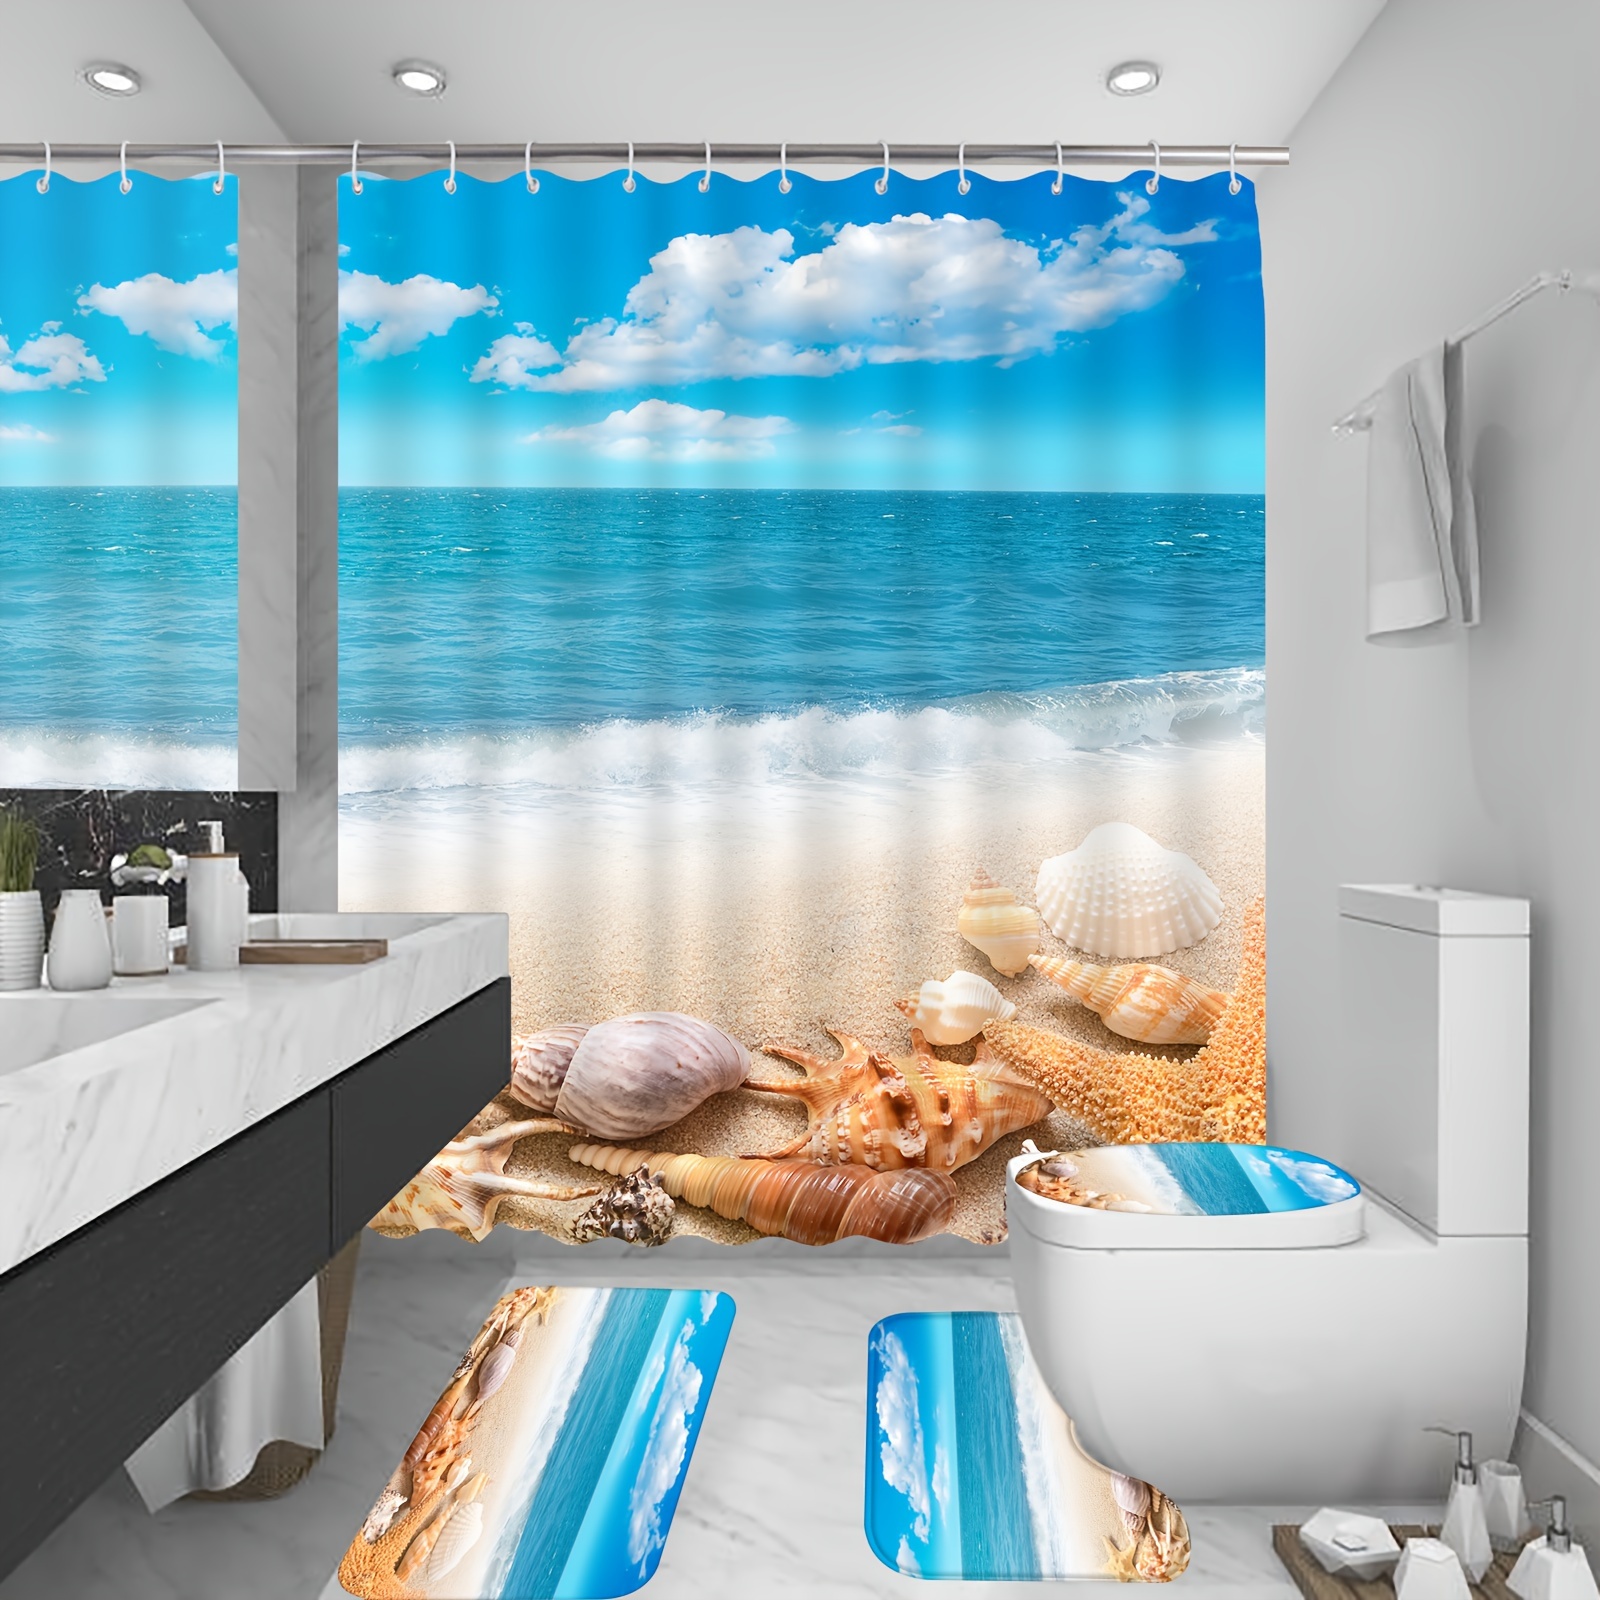 Cheap Beach Shower Curtain Coastal Shower Curtains with Hooks Seashells  Starfish on Teal Blue Bath Curtain Set Ocean Bathroom Decor